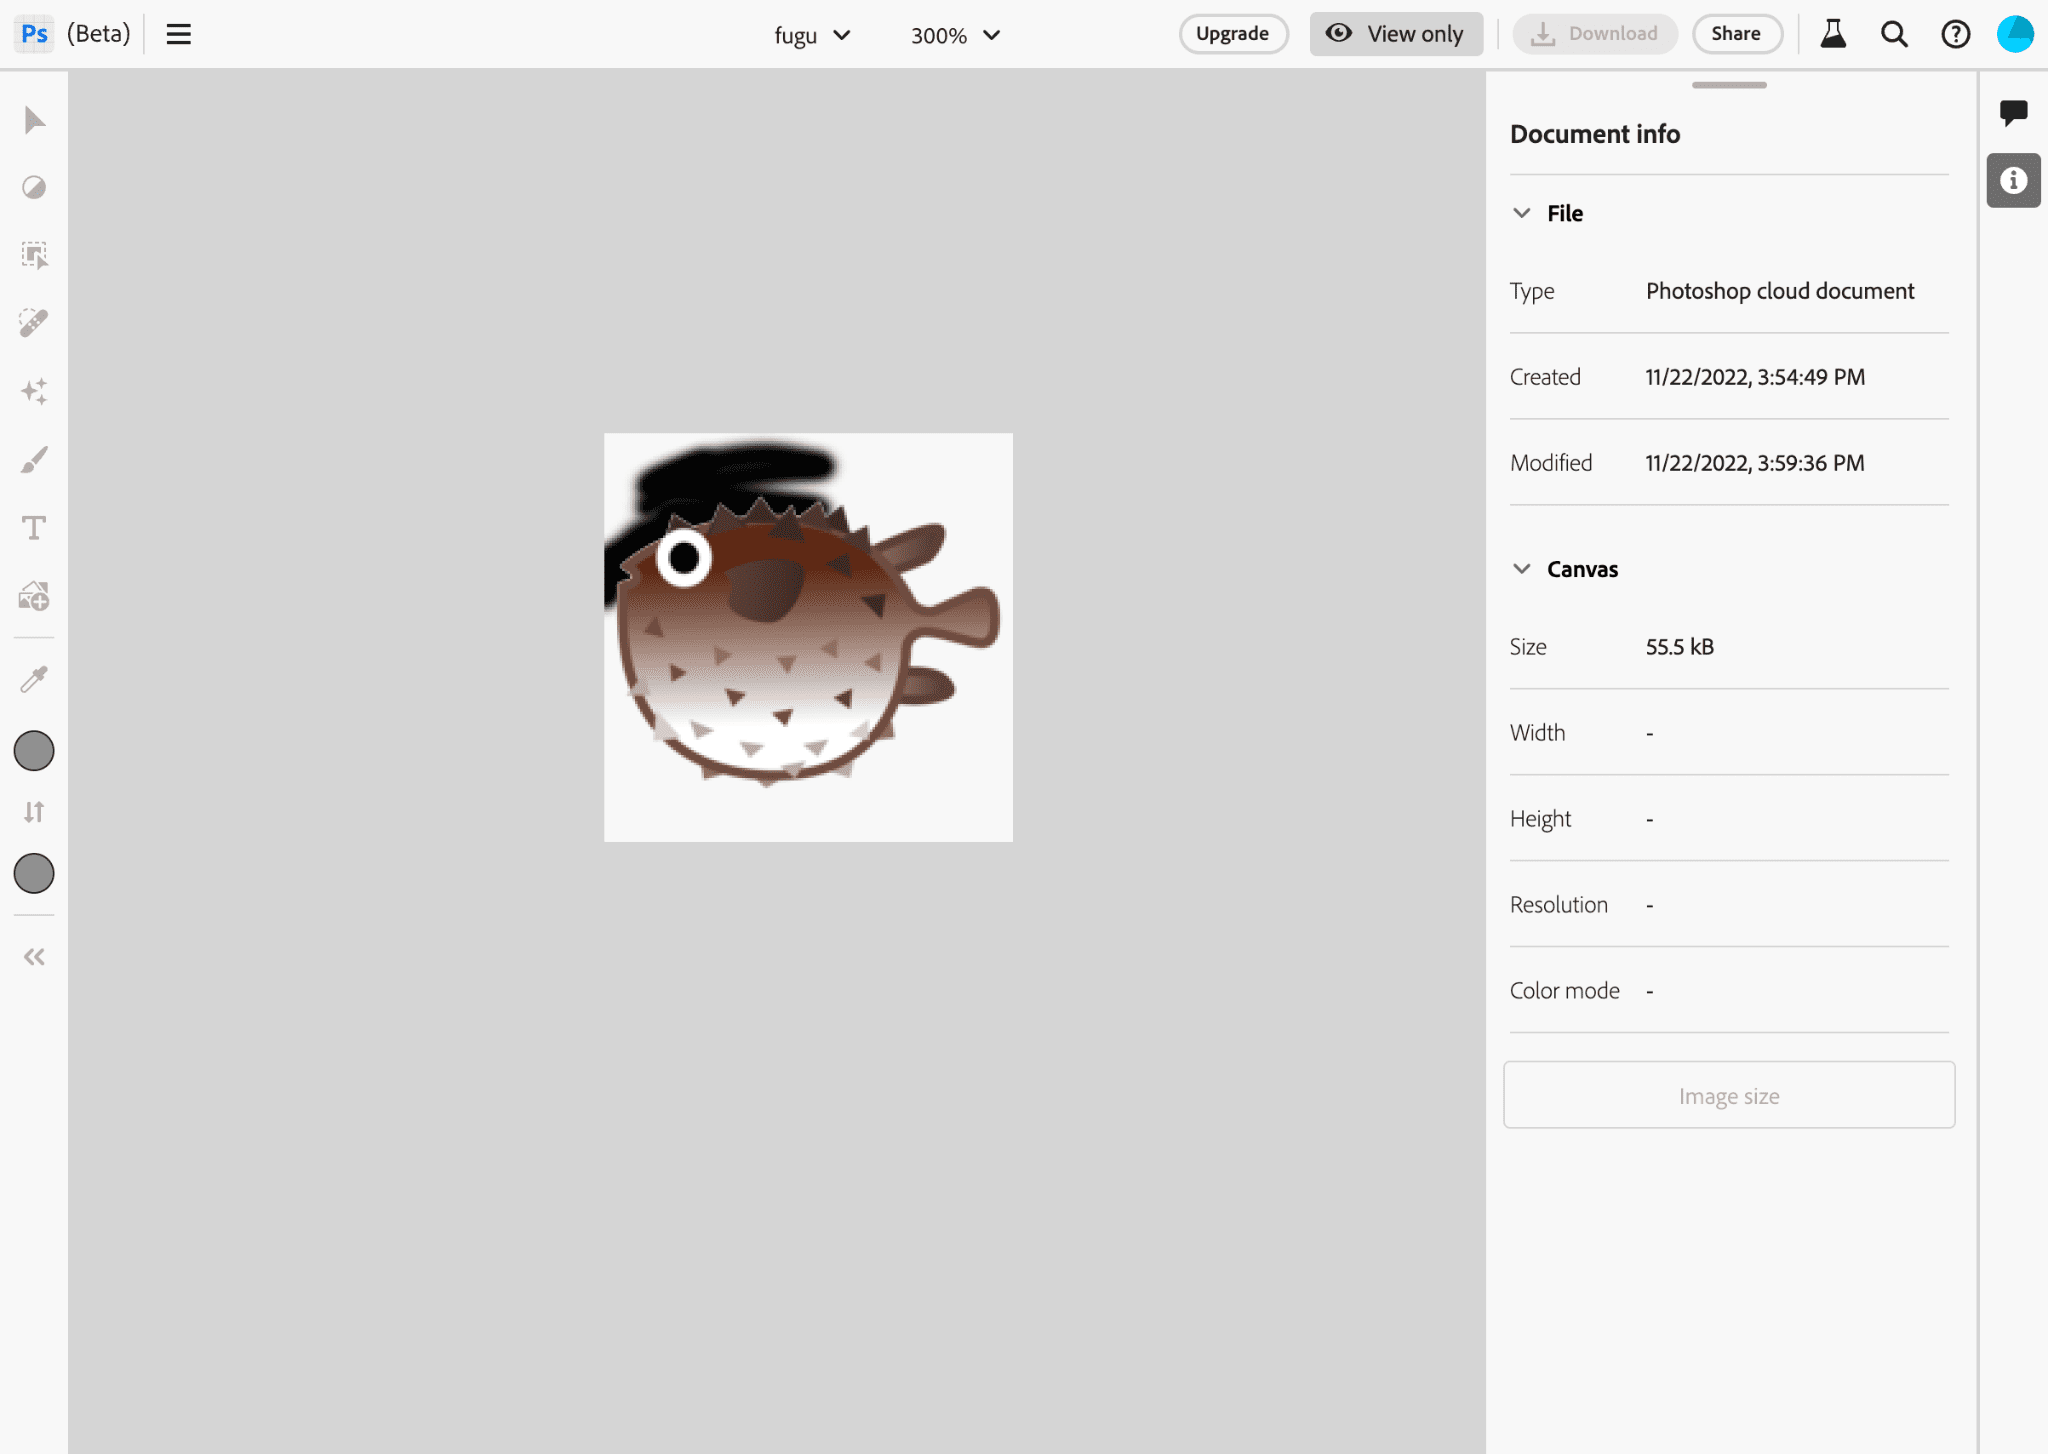 O app Photoshop ao editar uma imagem do logotipo do Projeto Fugu.